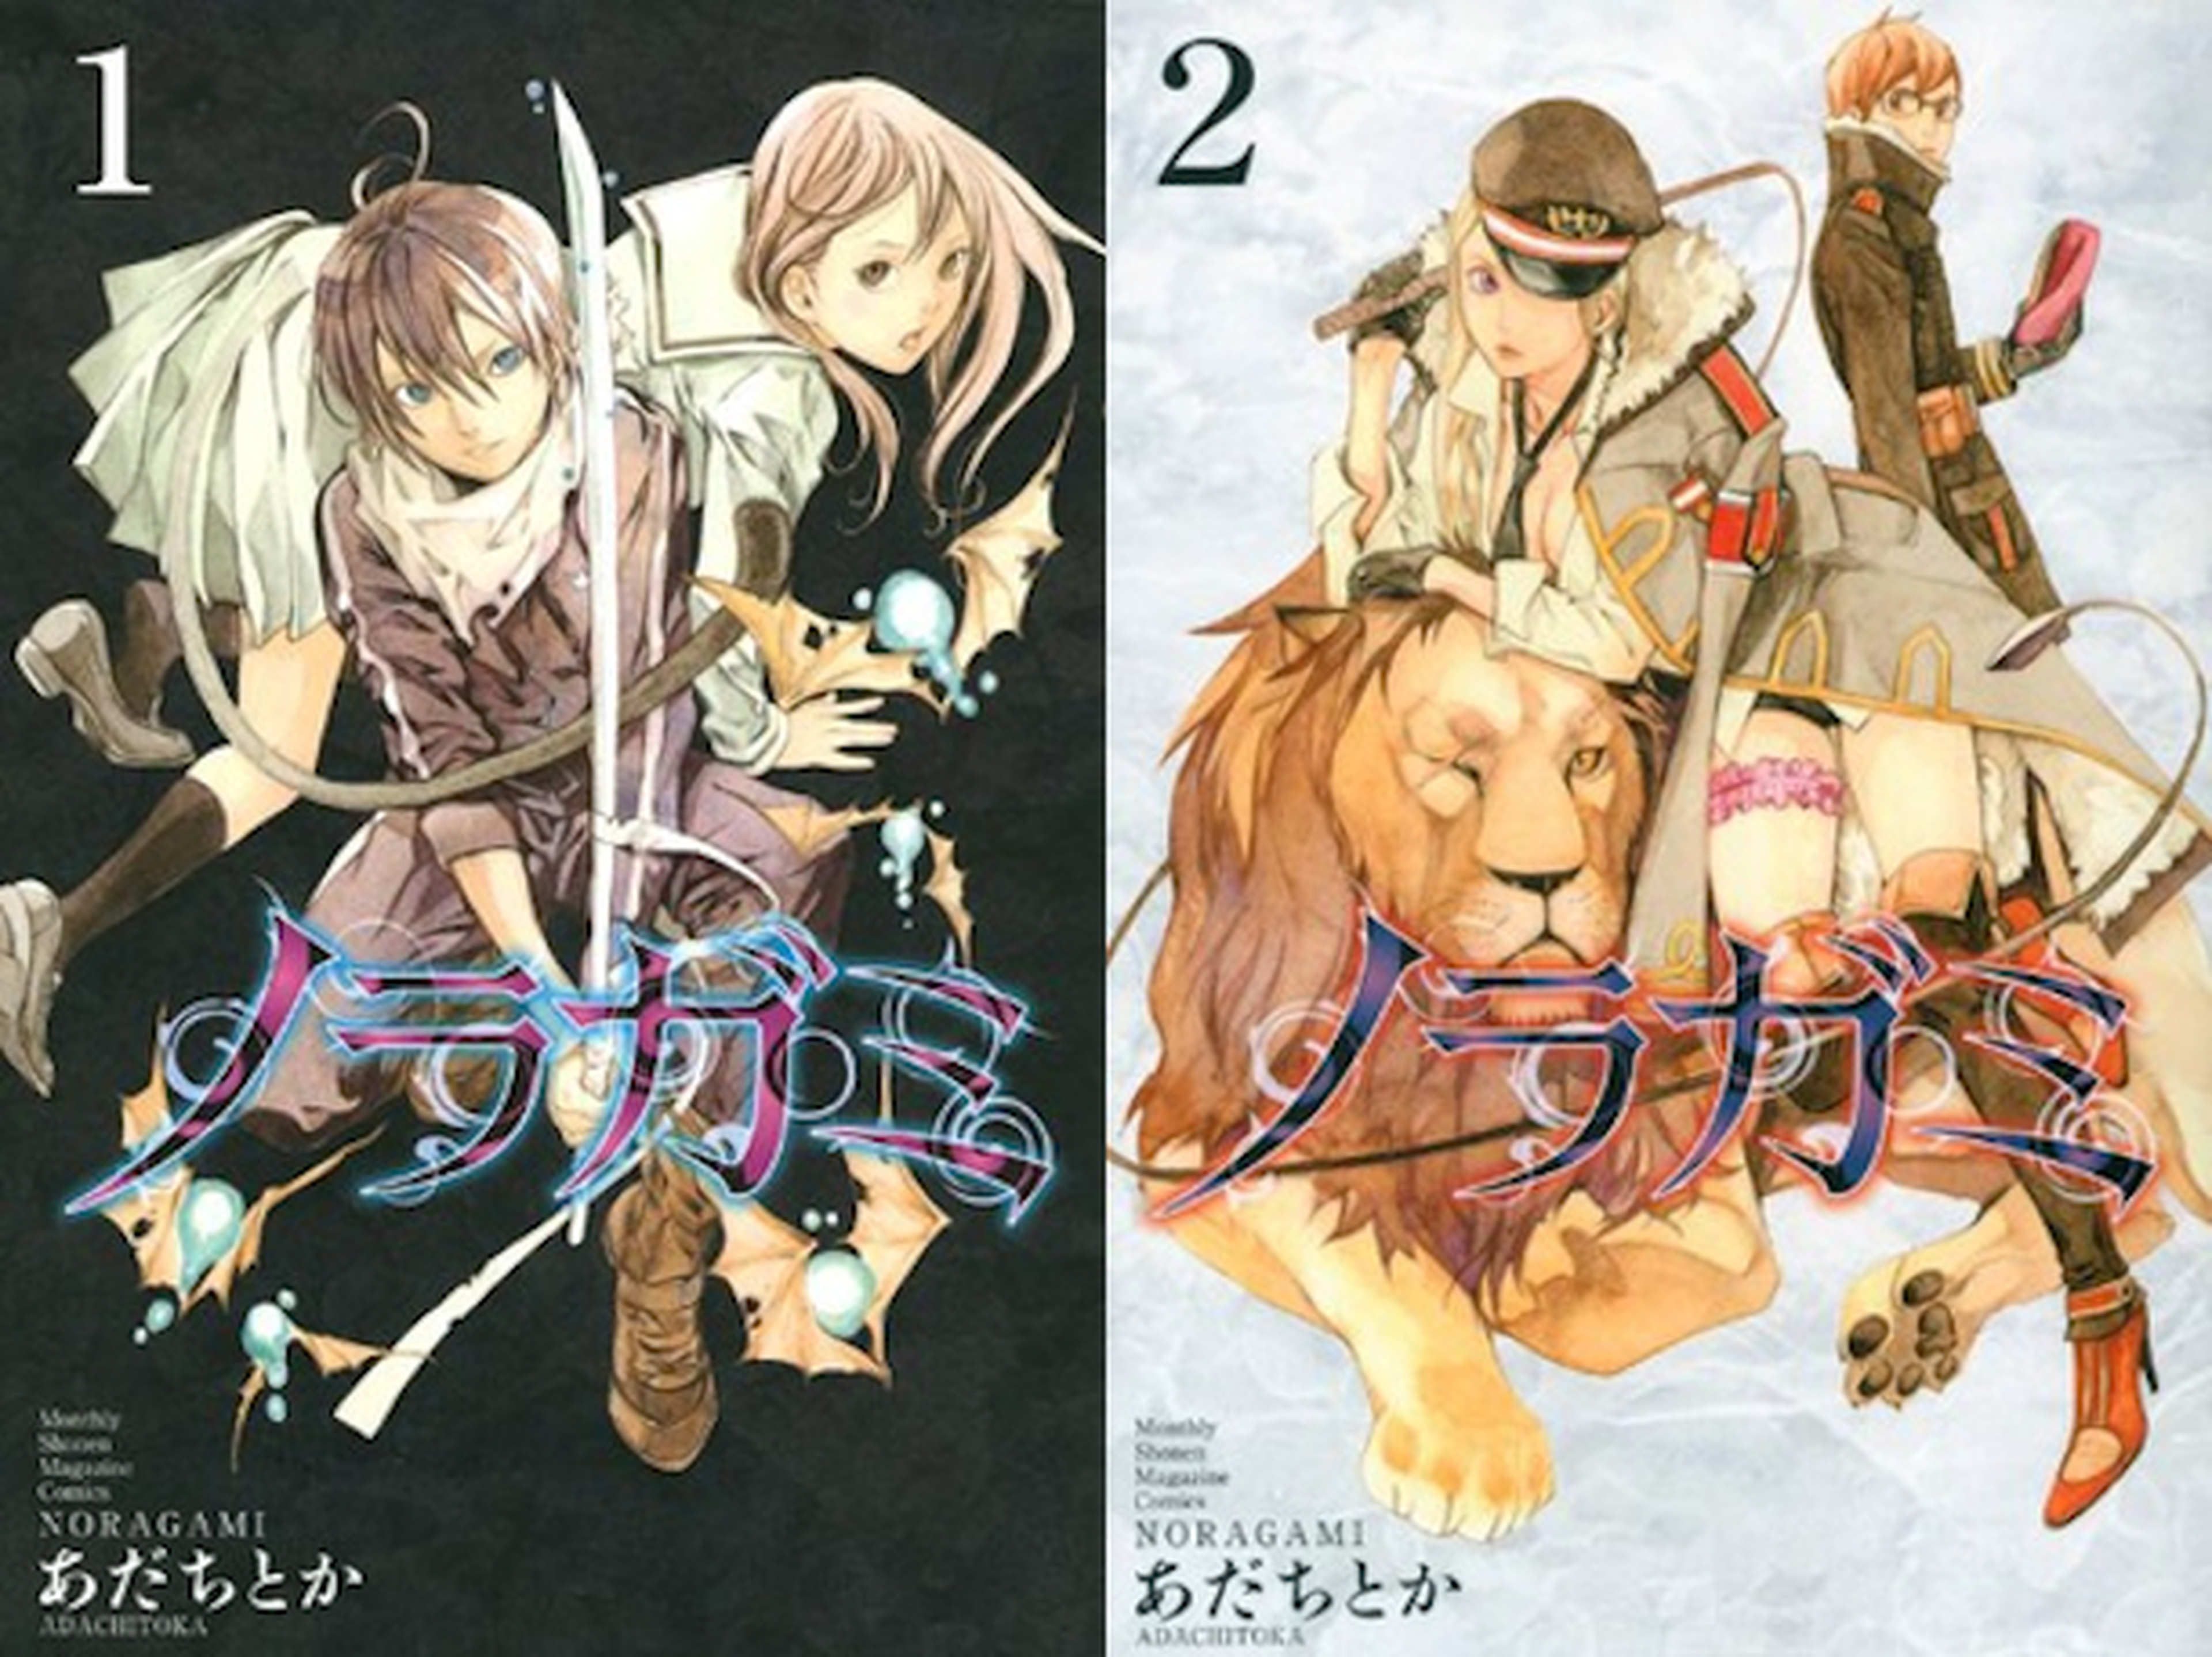 El manga Noragami se publicará en octubre